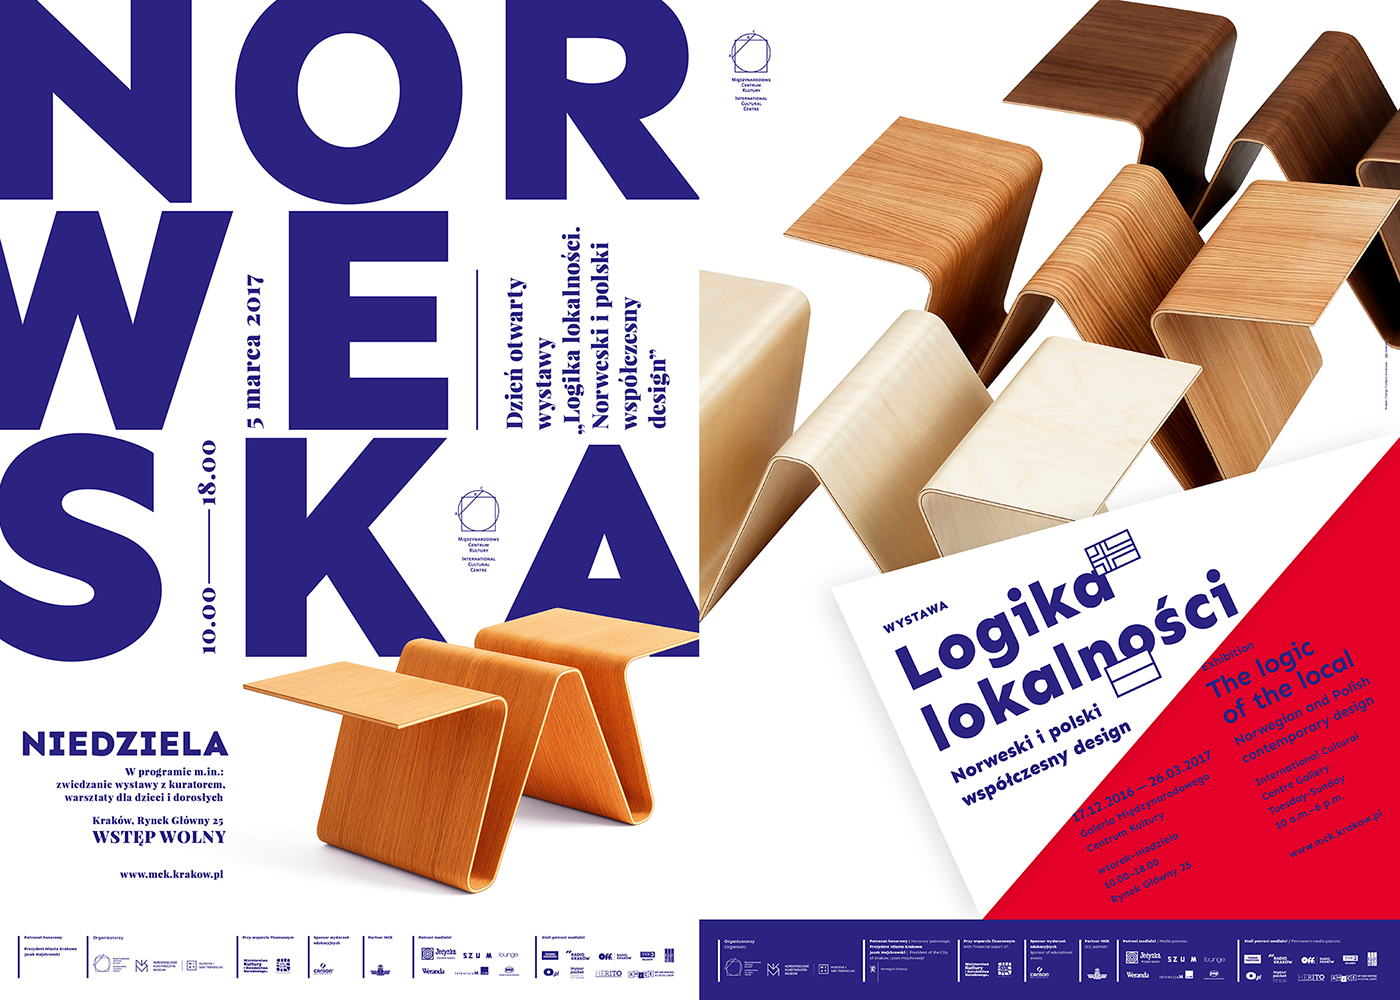 Norwegian design Exhibition  book visual identity design ICC poster krakow Album